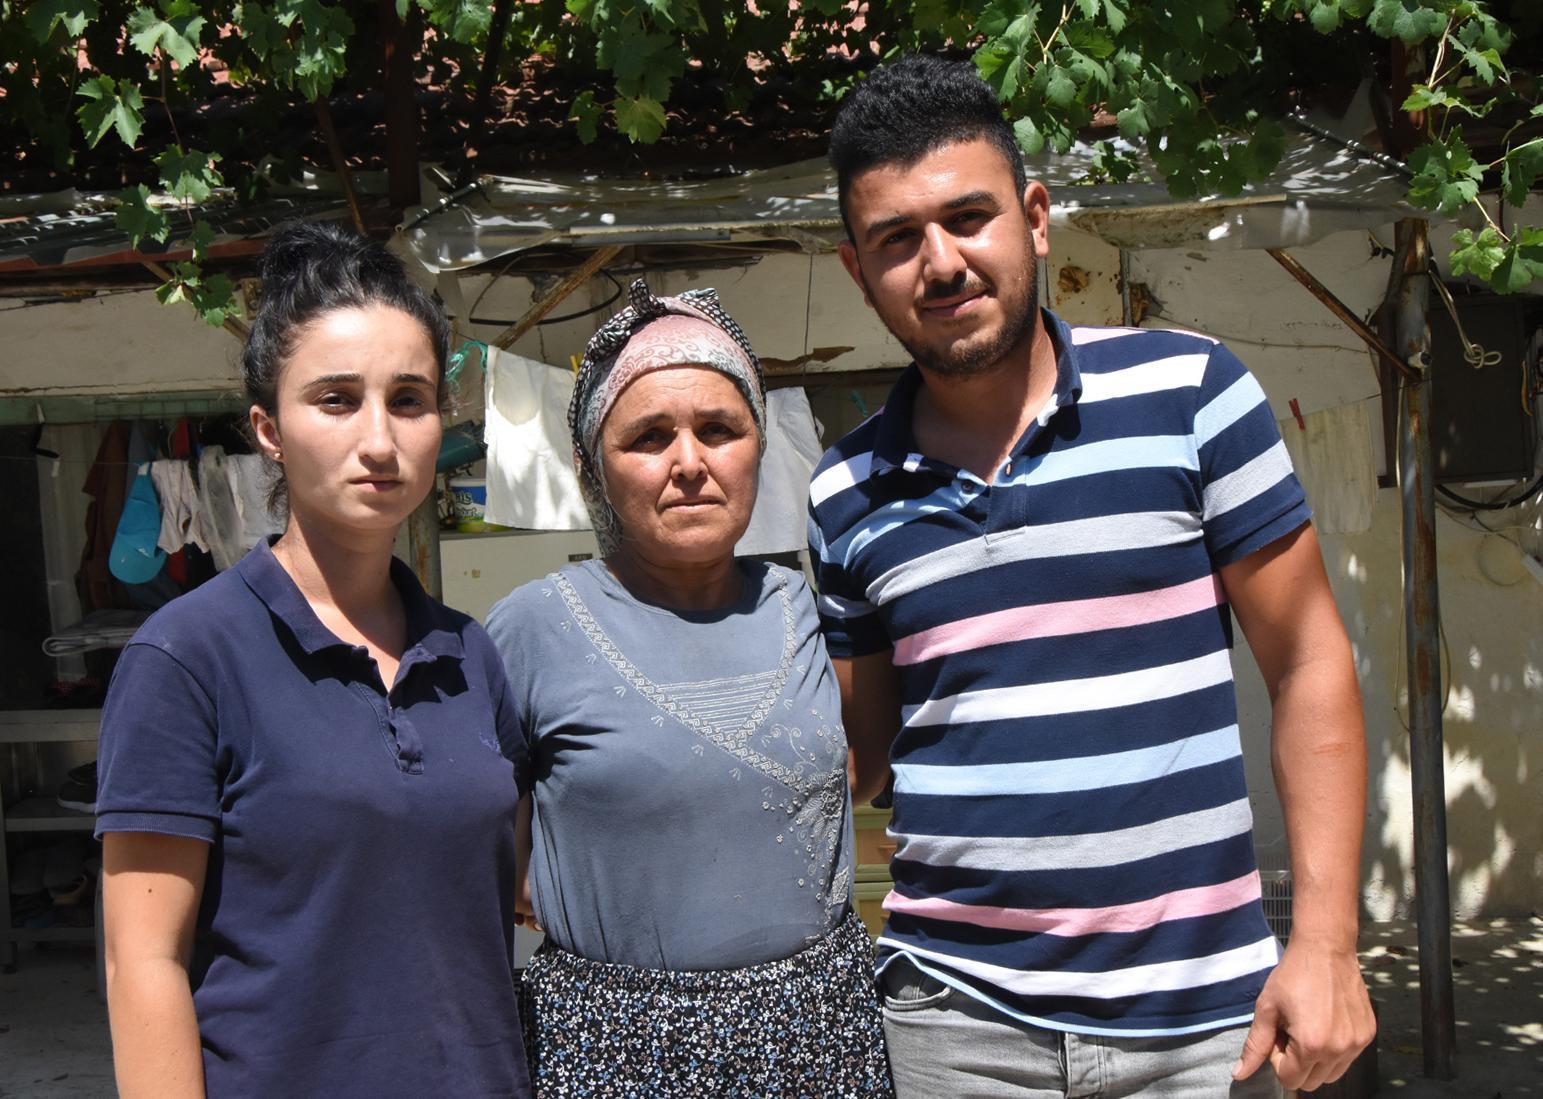 Türkiyenin gündemindeki çift ilk kez konuştu: İstismar yok, babaanne yönlendiriyor